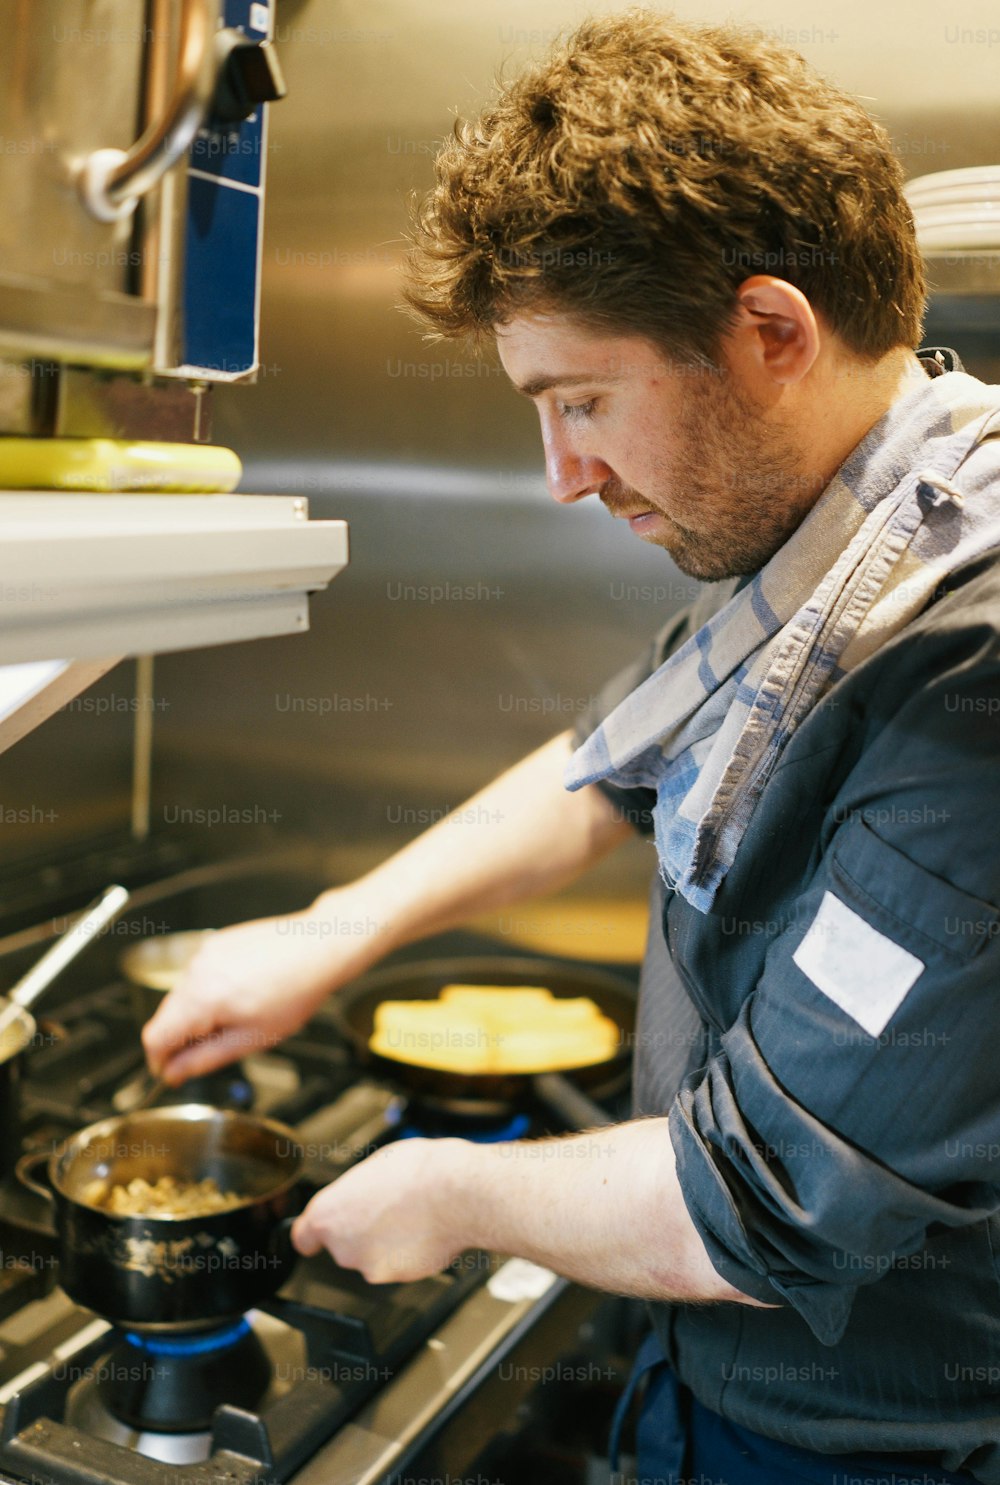 Un homme cuisinant de la nourriture sur une cuisinière dans une cuisine